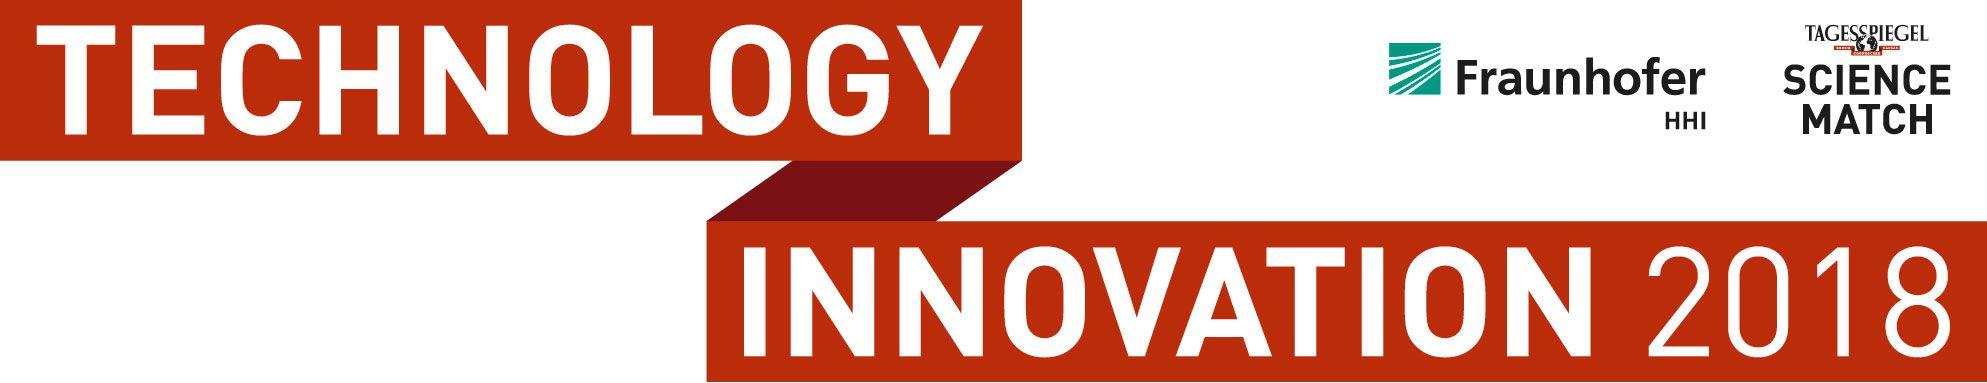 Red Technology Logo - Technology Innovation Science Match | Science Match